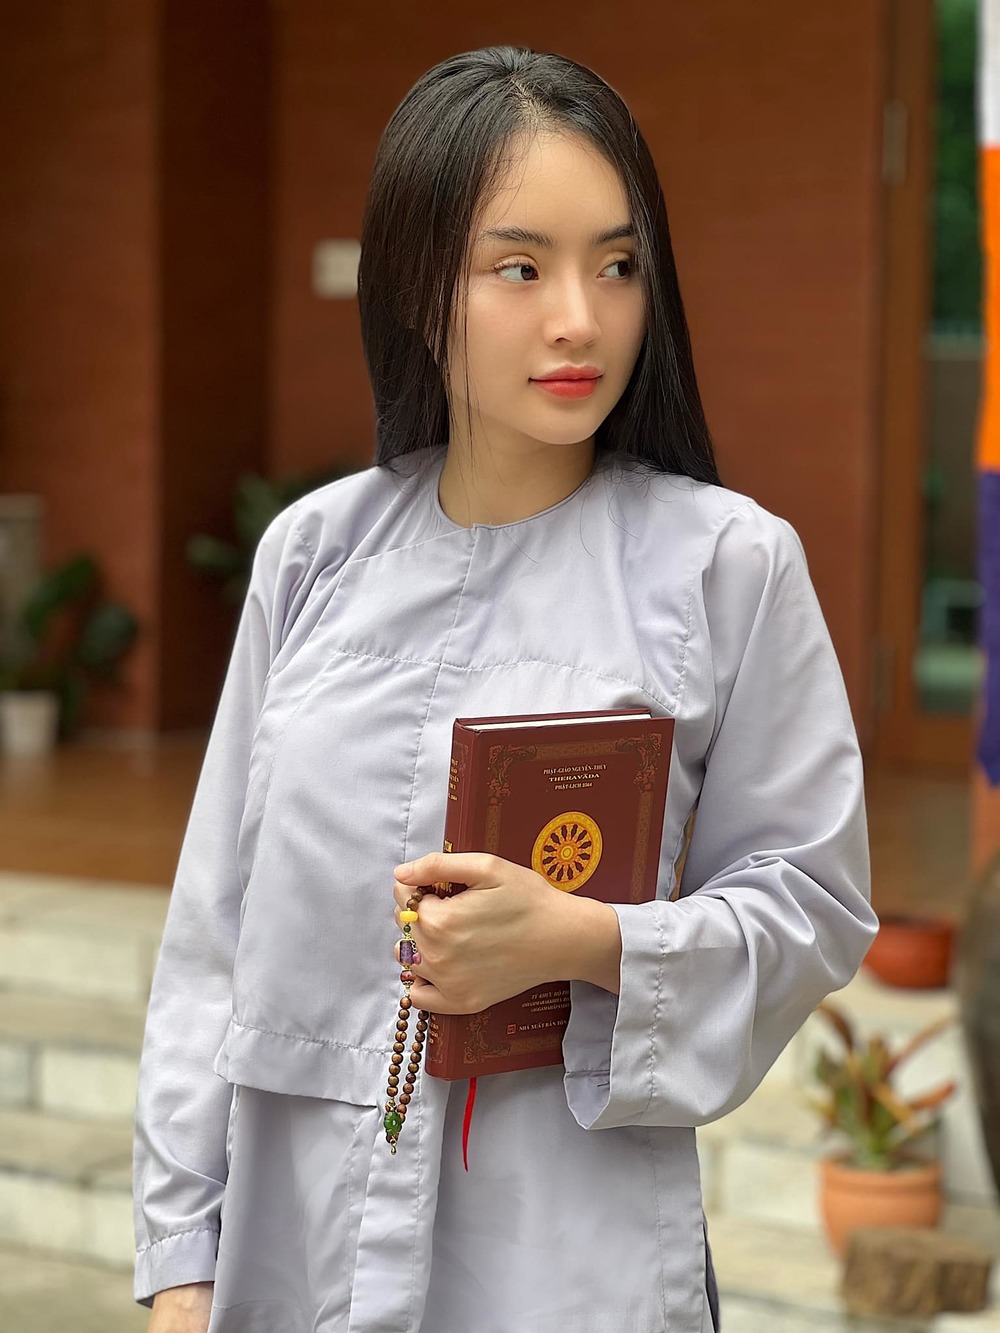  
Phương Trang thường xuất hiện với hình ảnh giản dị mặc áo lam nhà Phật. (Ảnh: FB Phương Trang) - Tin sao Viet - Tin tuc sao Viet - Scandal sao Viet - Tin tuc cua Sao - Tin cua Sao